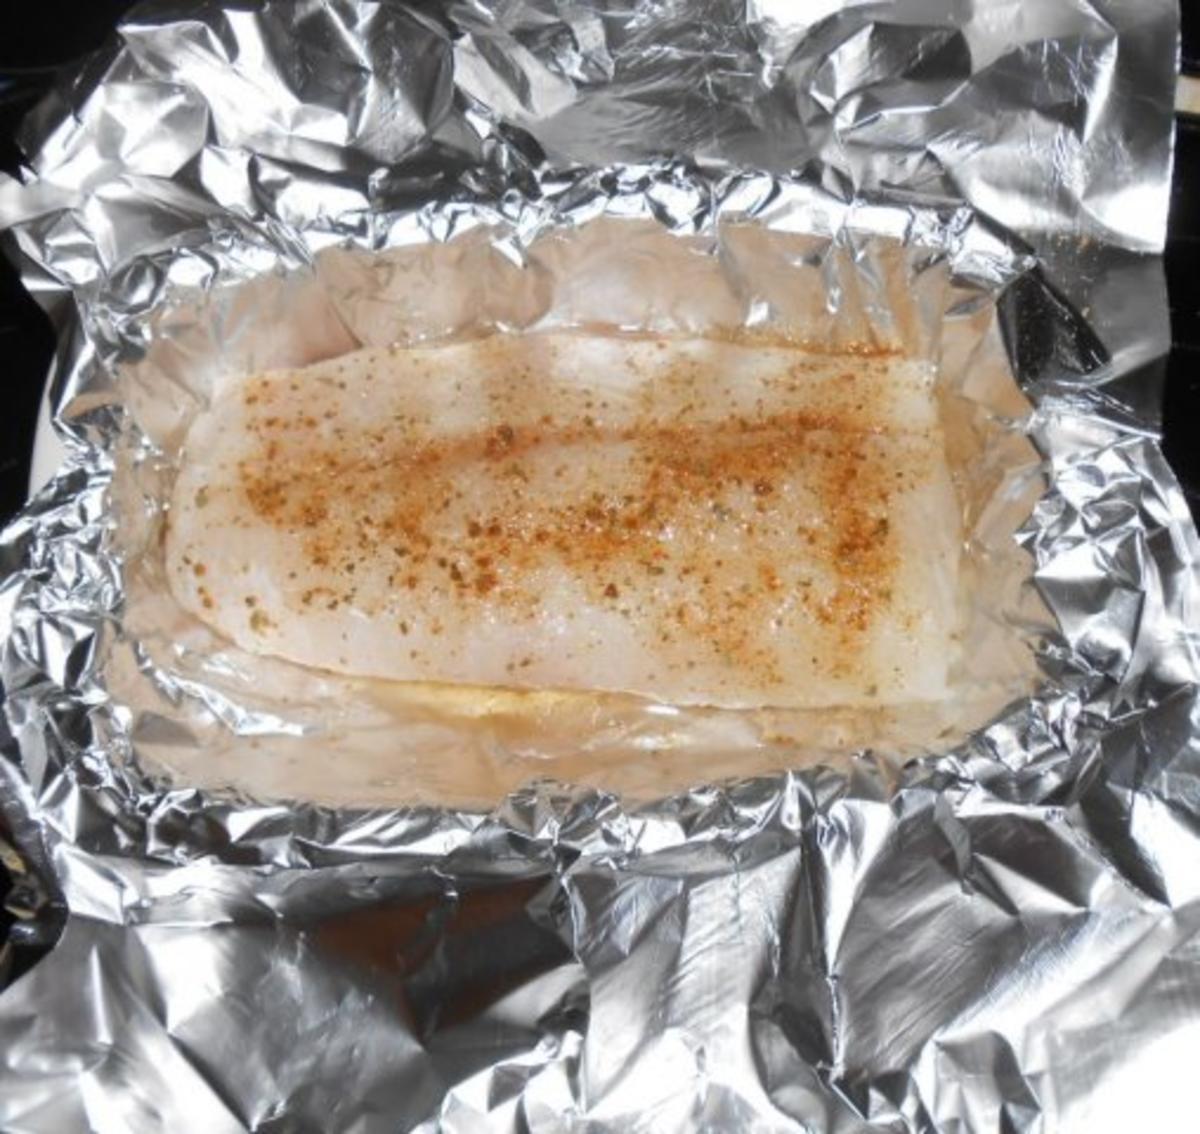 Kabeljaurückenfilet aus dem Ofen mit überbackenem Karotten-Kartoffelgemüse - Rezept - Bild Nr. 3